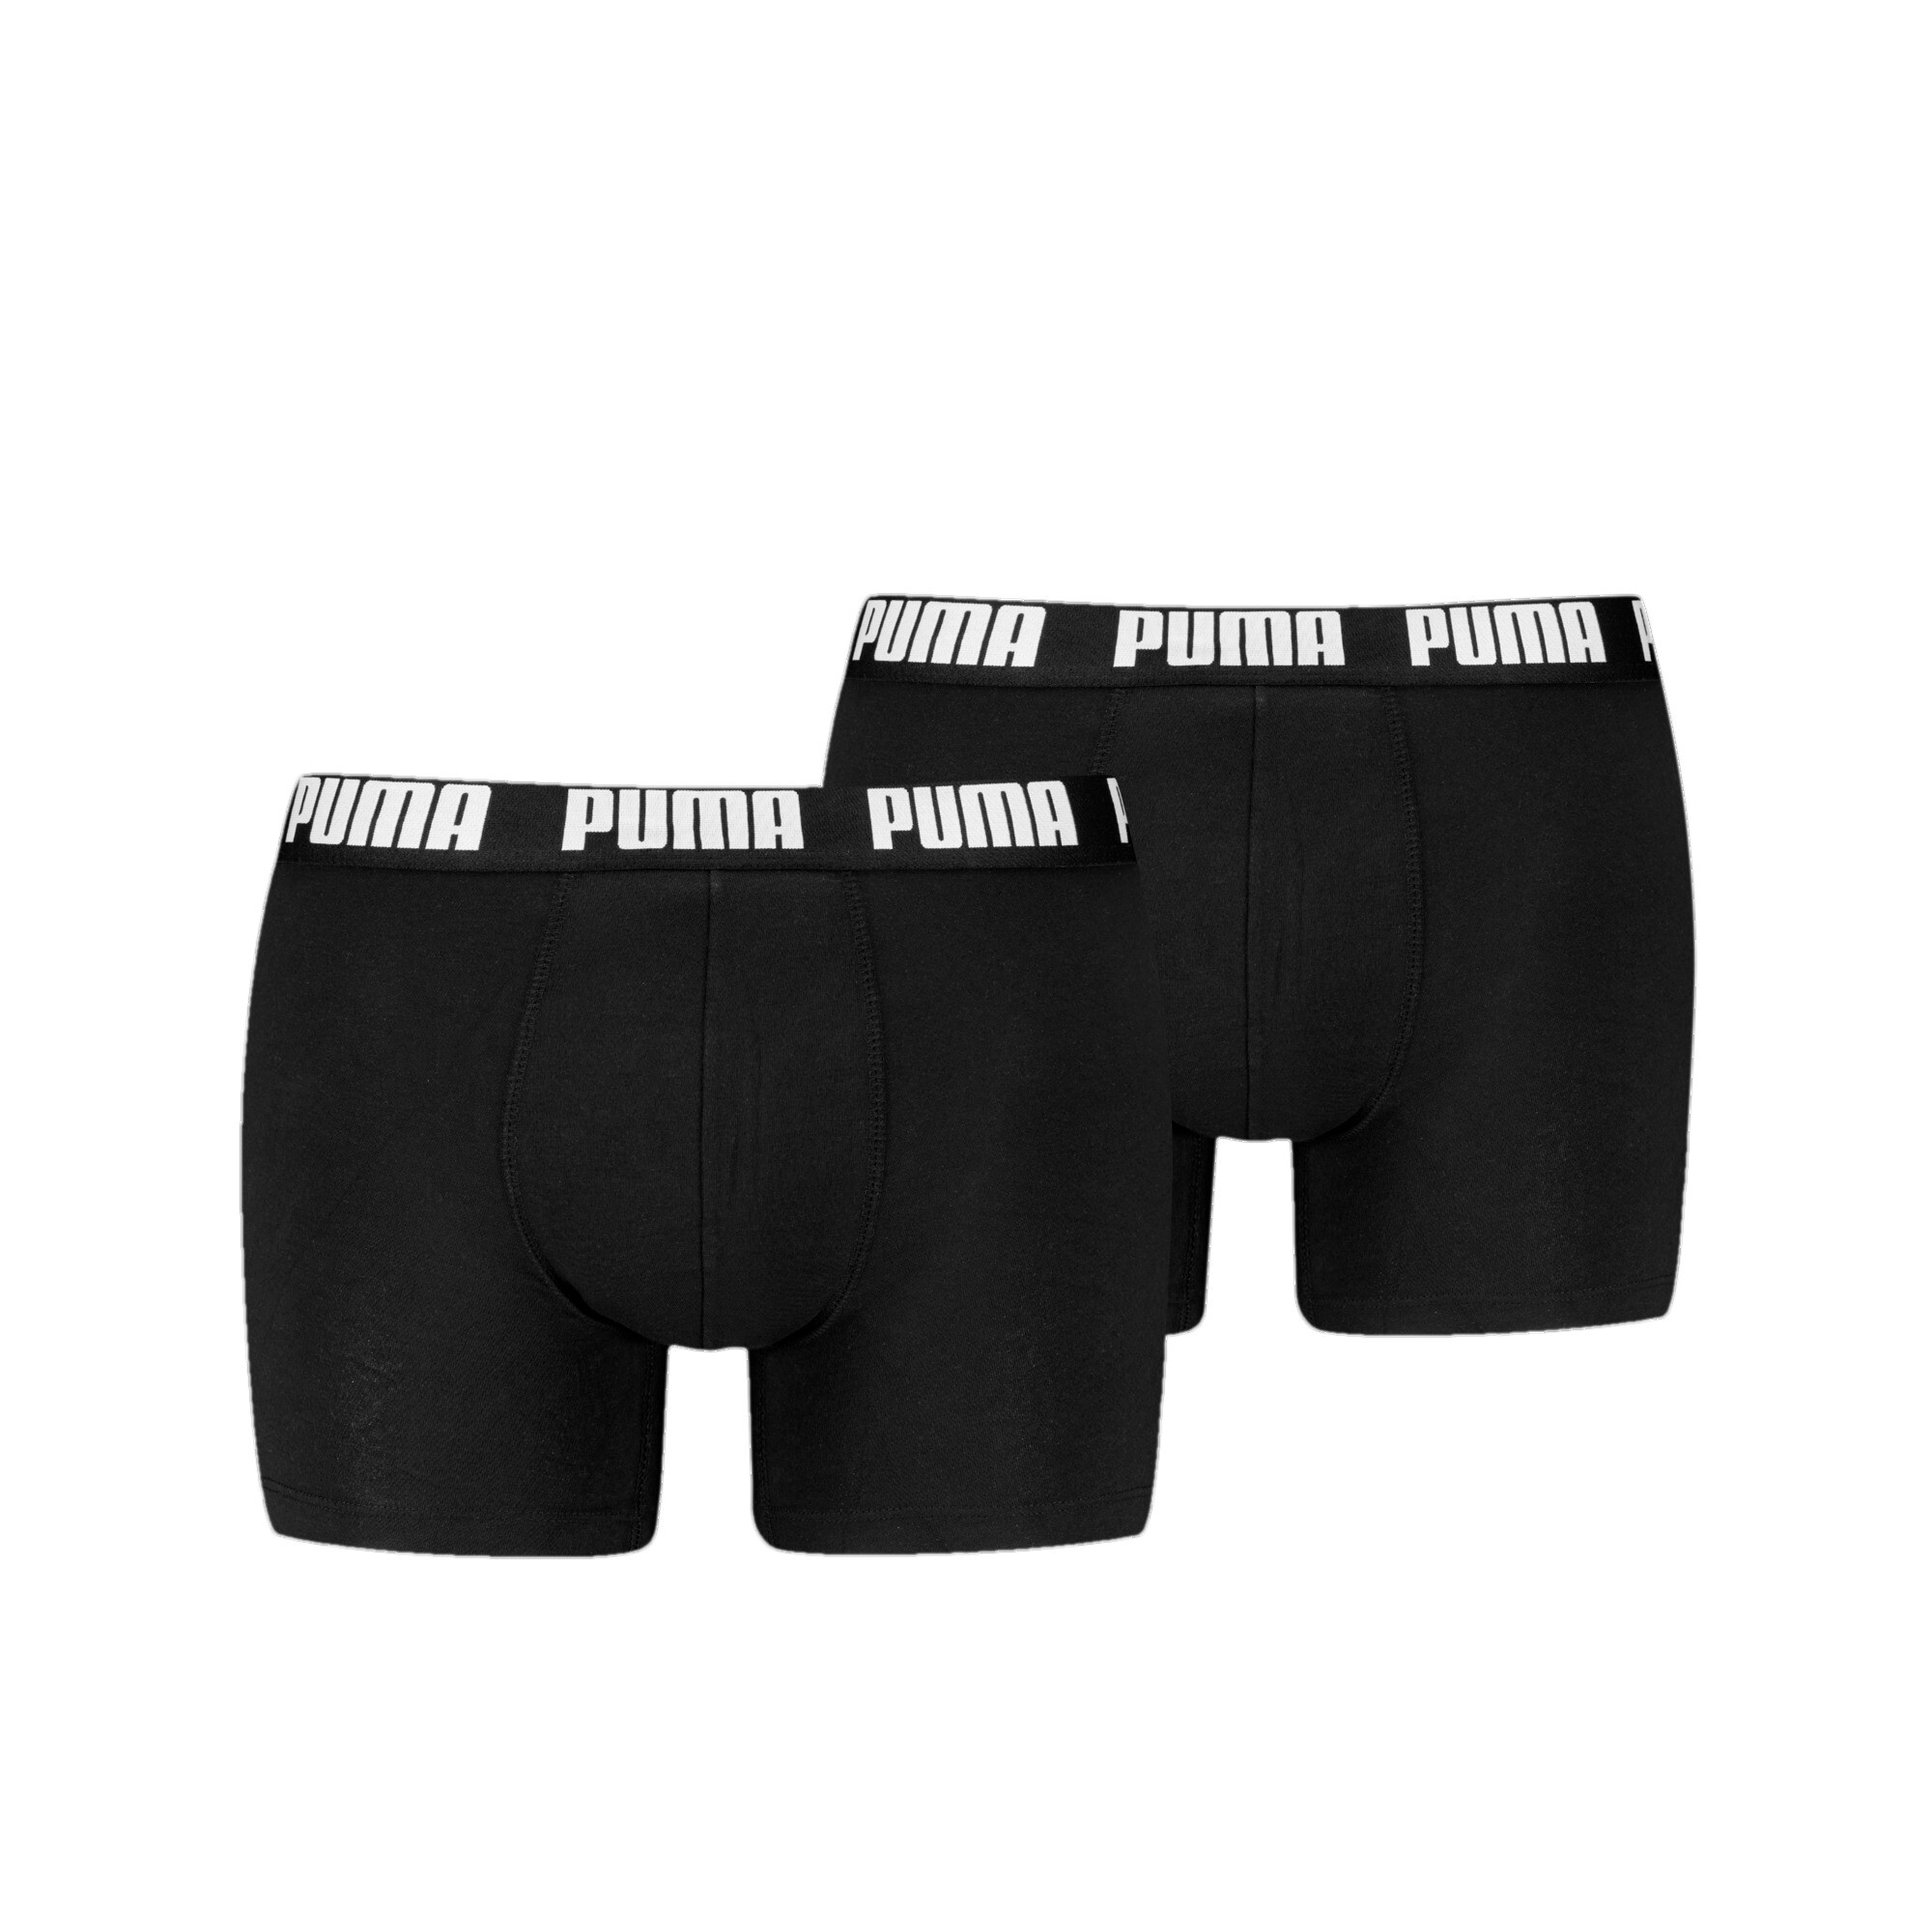 Men's Puma's Boxer Briefs 2 Pack, Black, Size 5, Clothing